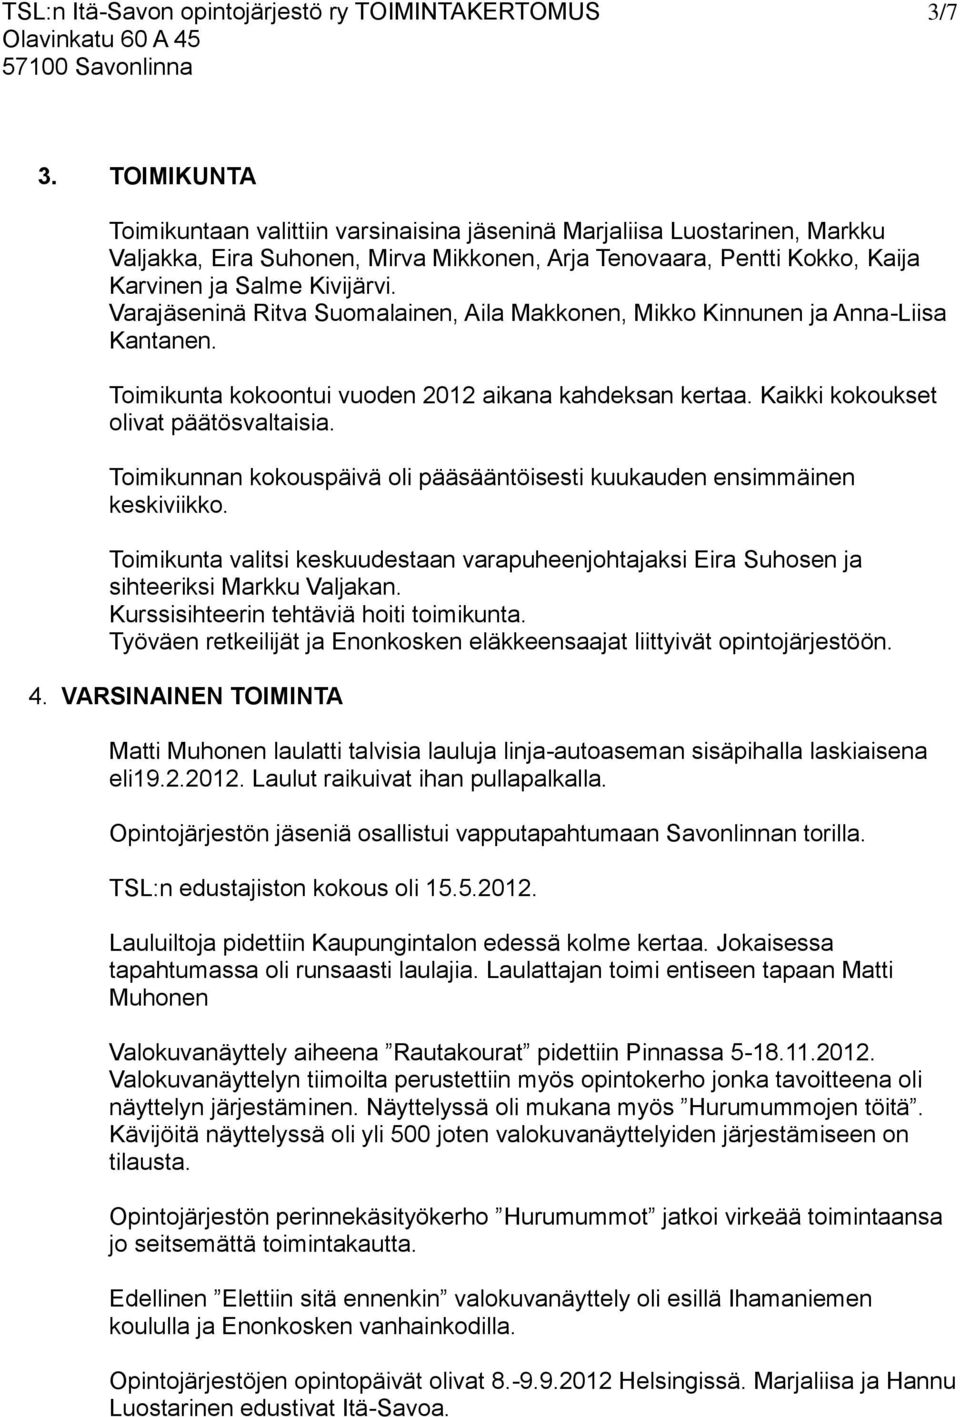 Varajäseninä Ritva Suomalainen, Aila Makkonen, Mikko Kinnunen ja Anna-Liisa Kantanen. Toimikunta kokoontui vuoden 2012 aikana kahdeksan kertaa. Kaikki kokoukset olivat päätösvaltaisia.